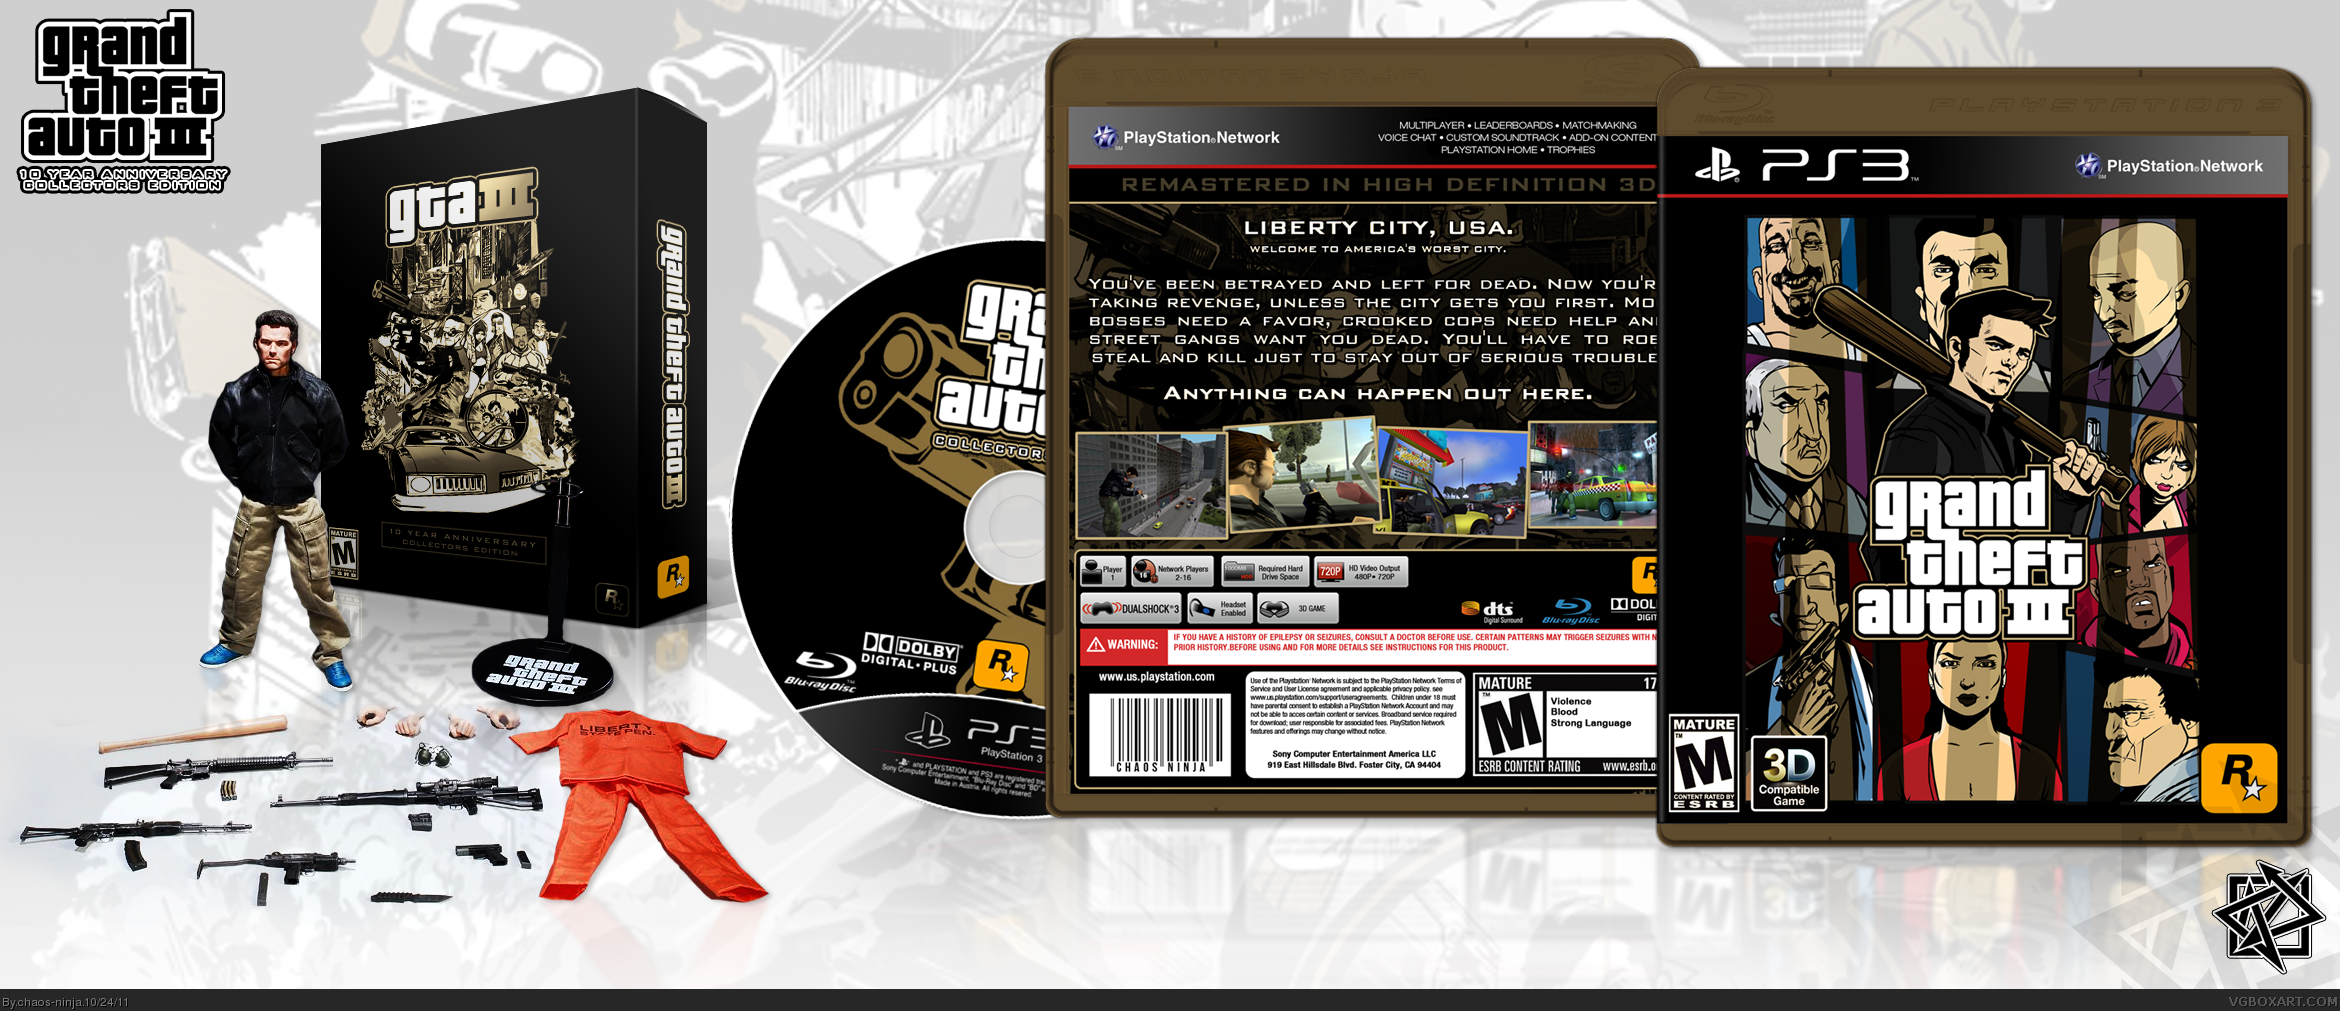 Grand Theft Auto III Collectors Edition box cover